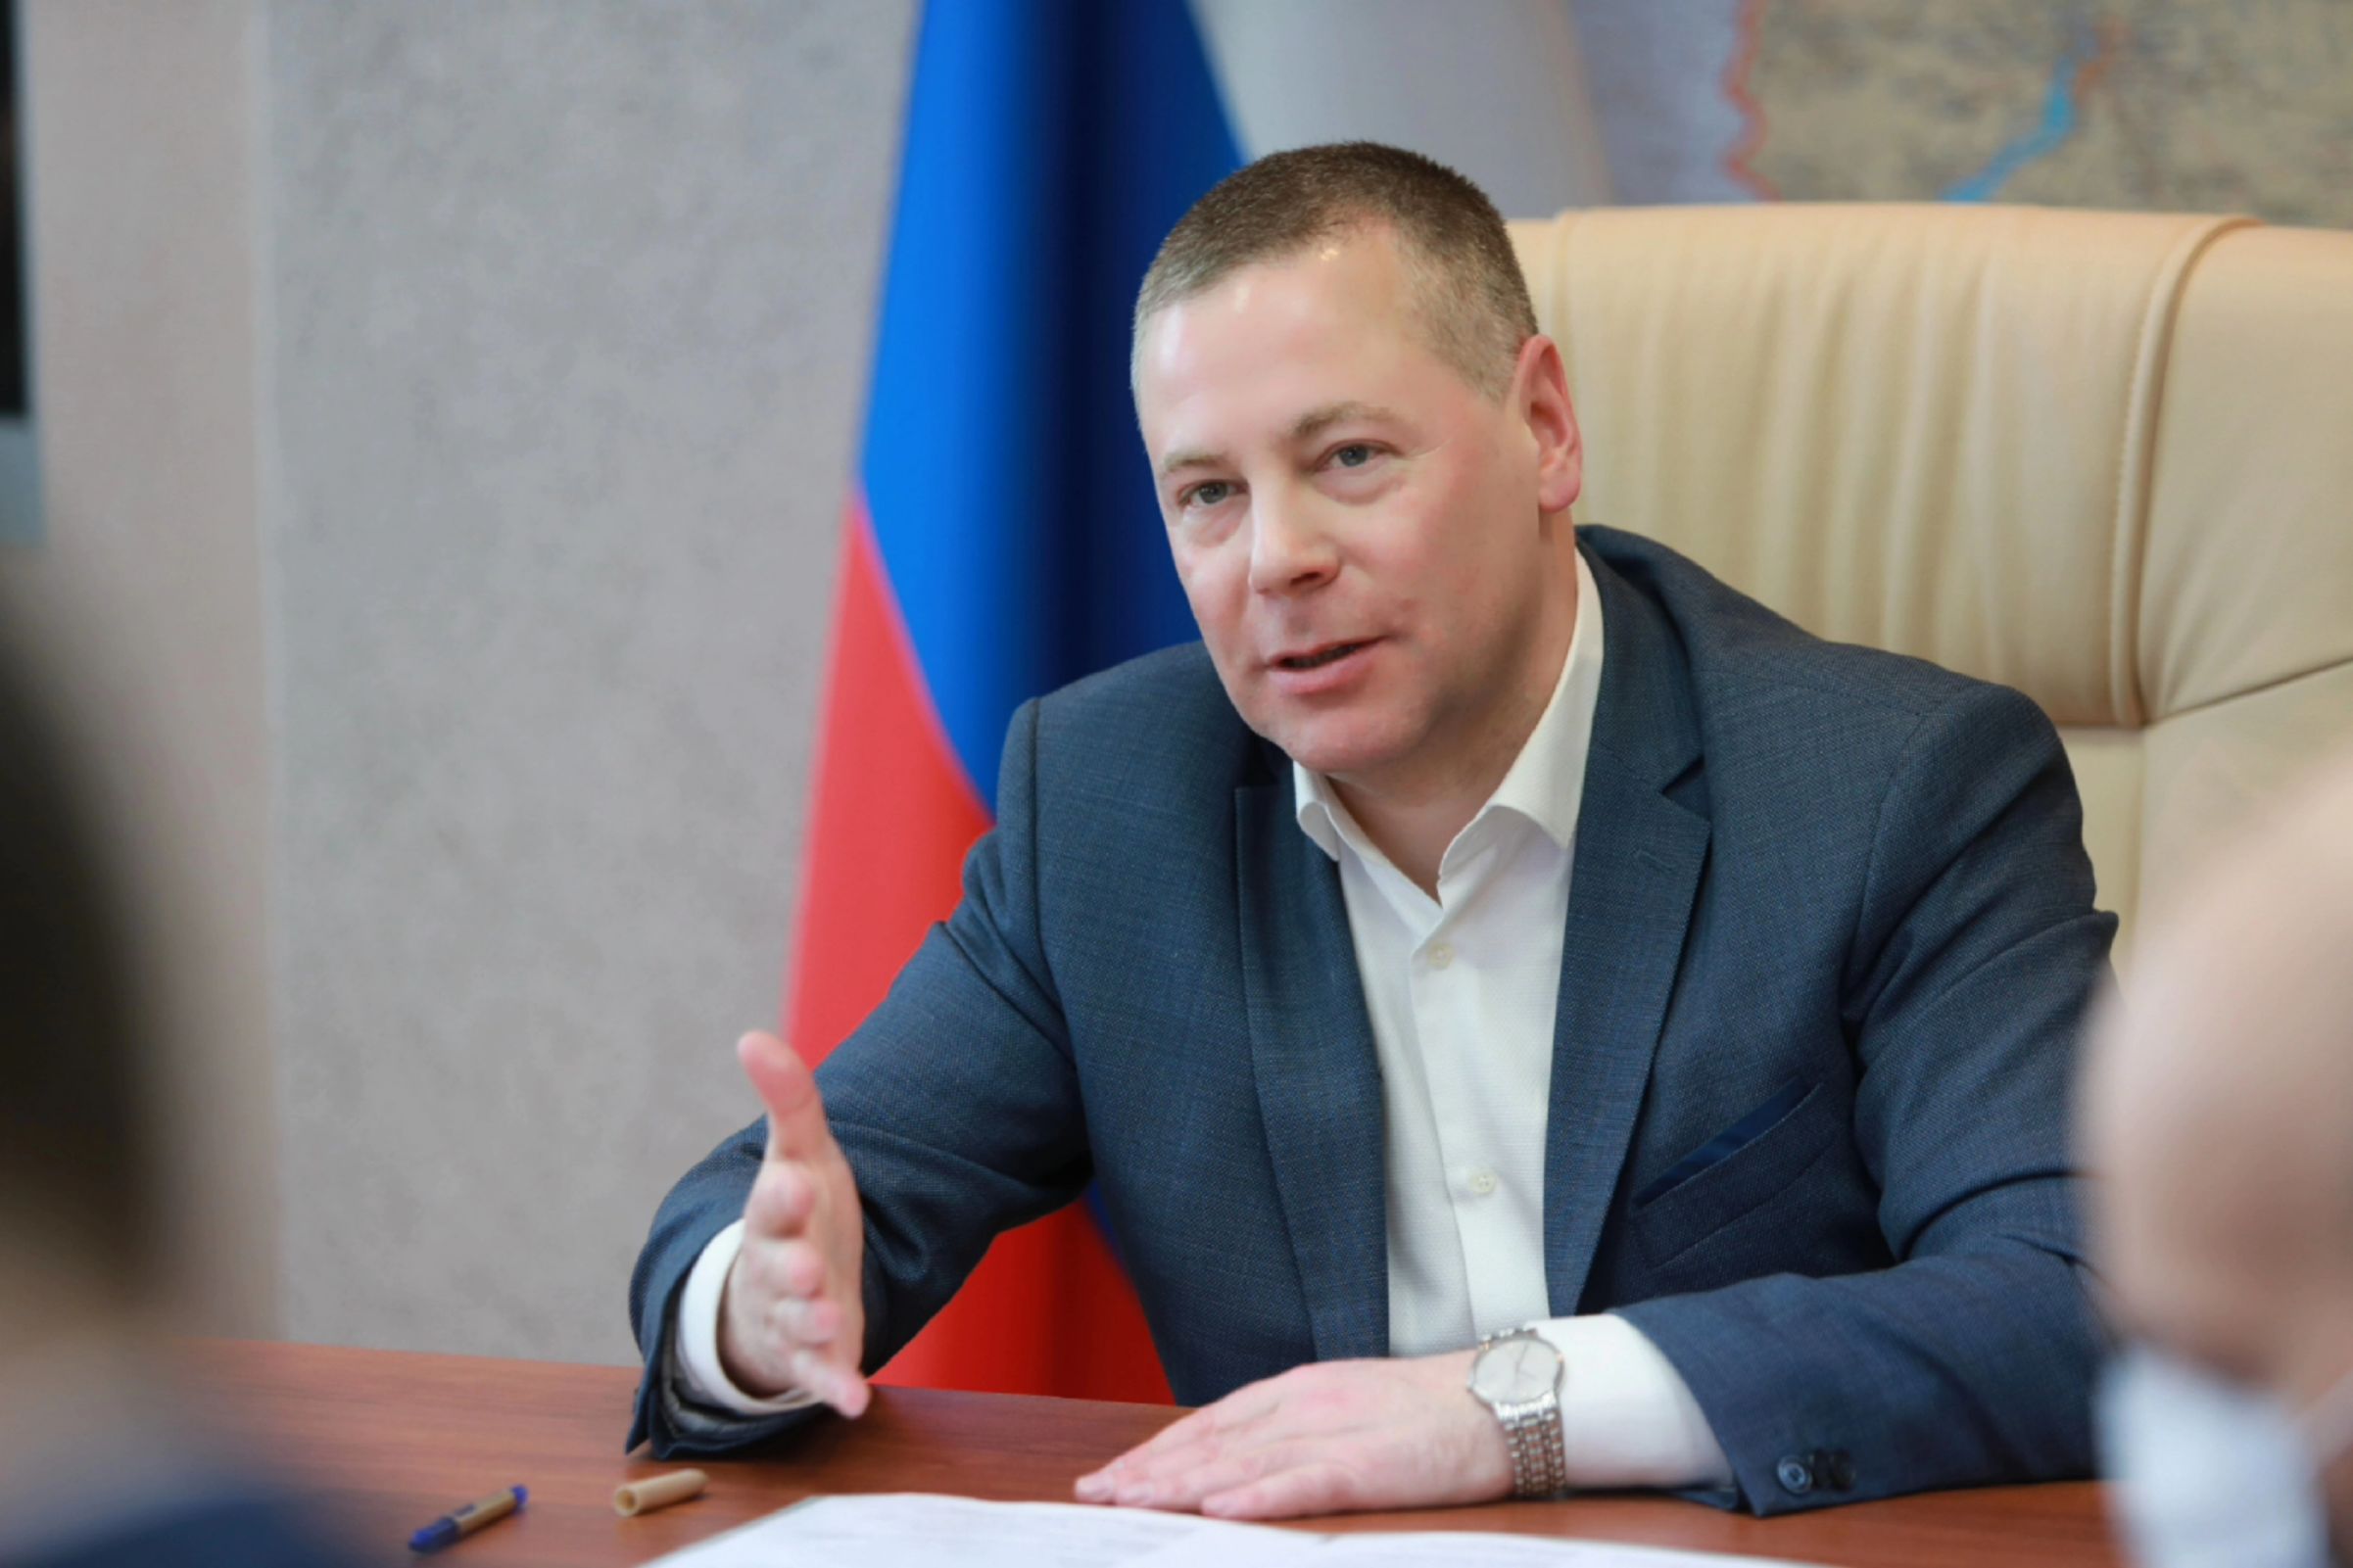 ​Ярославский бизнес получает необходимую поддержку в условиях санкций